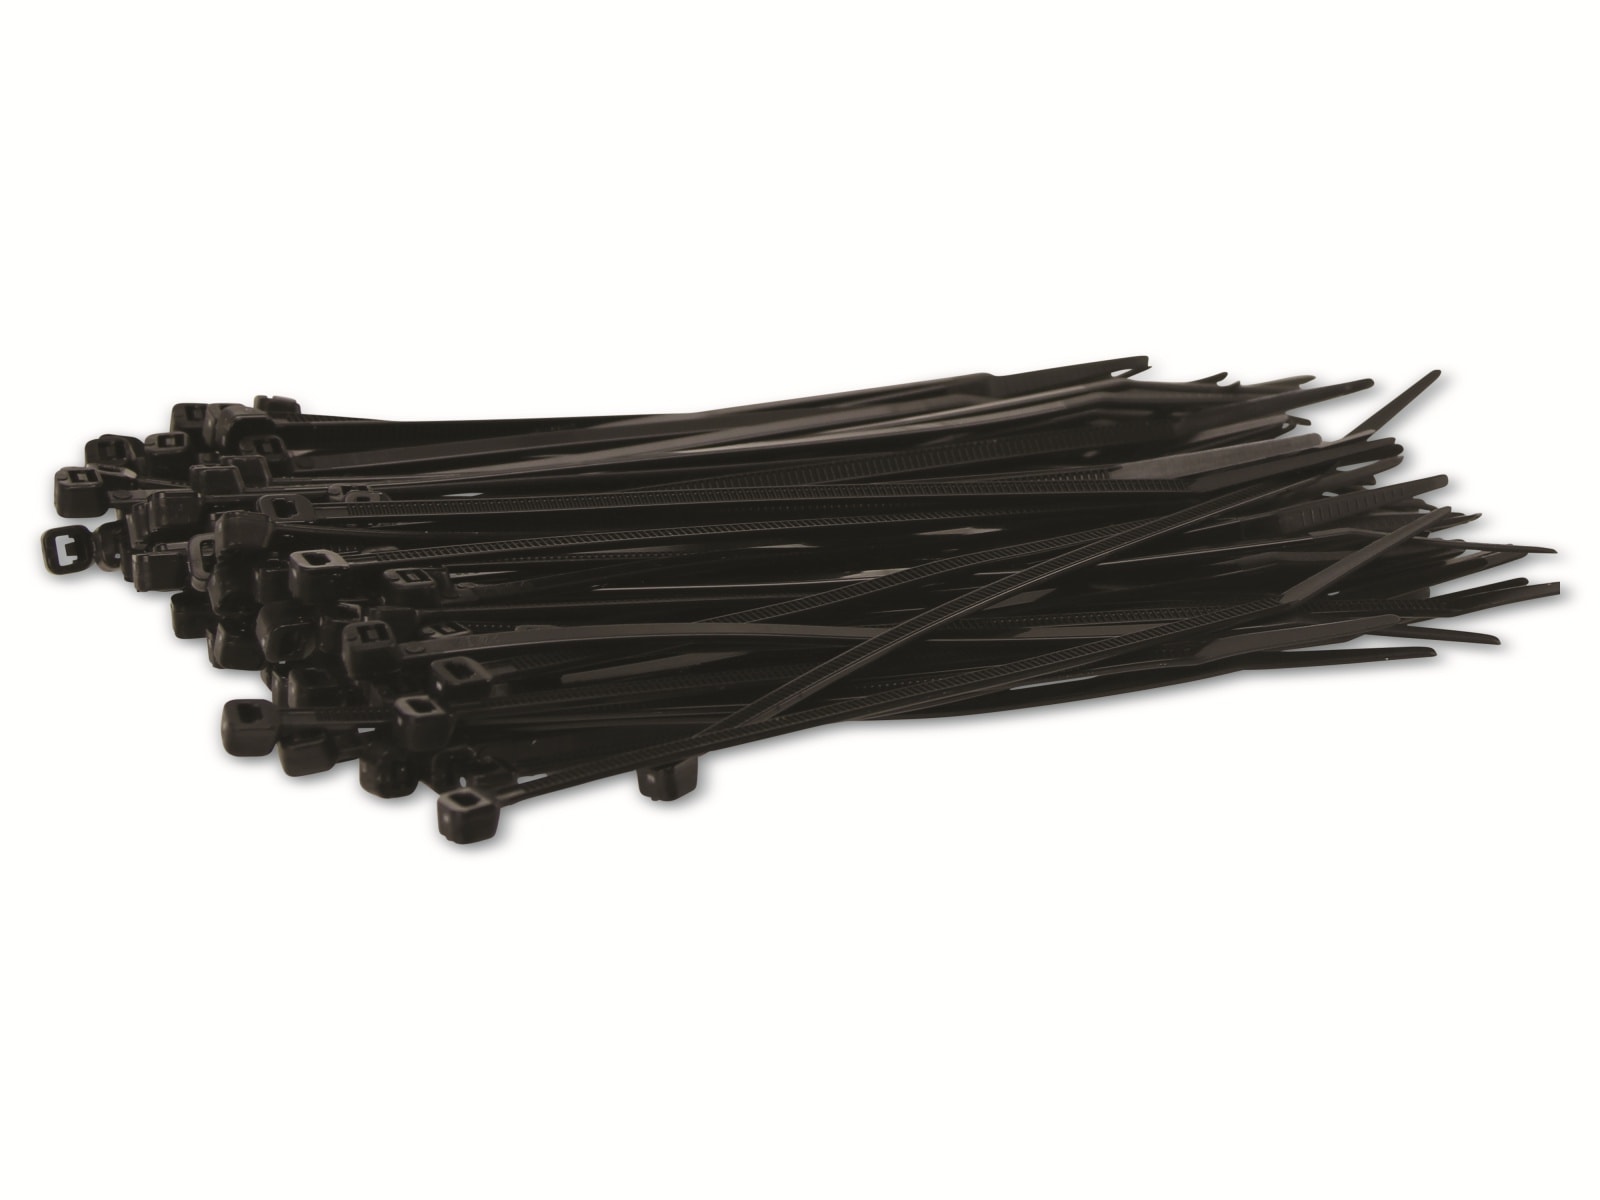 KSS Kabelbinder-Sortiment Polyamid 6.6, schwarz, 150x3,6, UV-beständig, 100 Stück